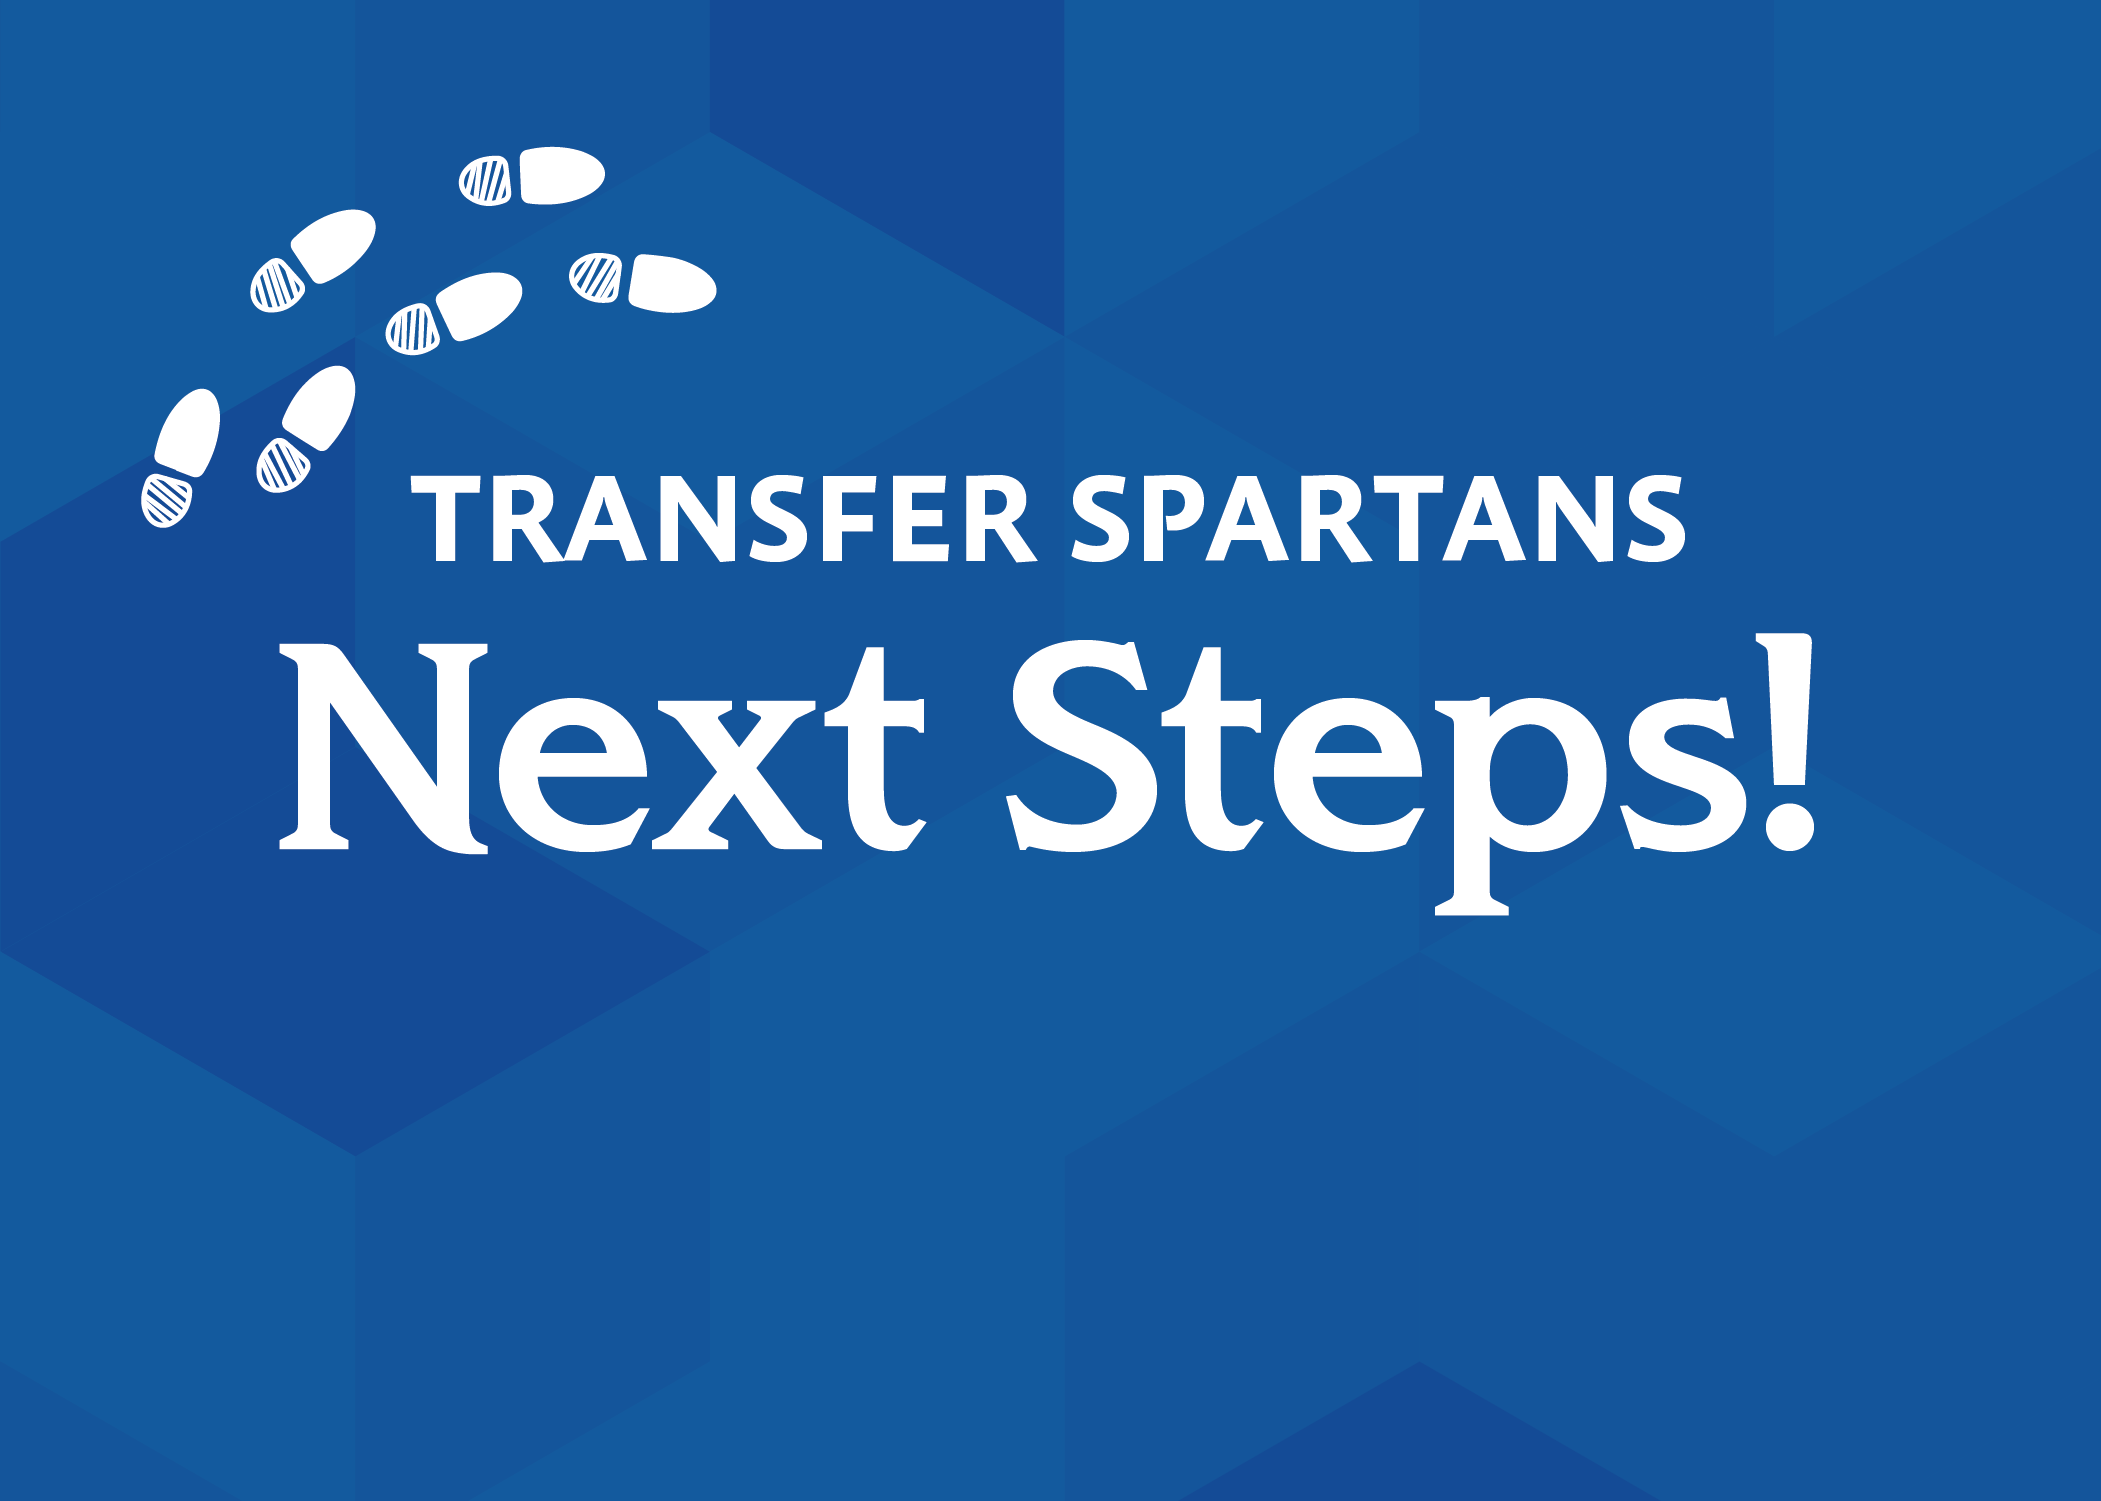 Transfer Spartans next steps